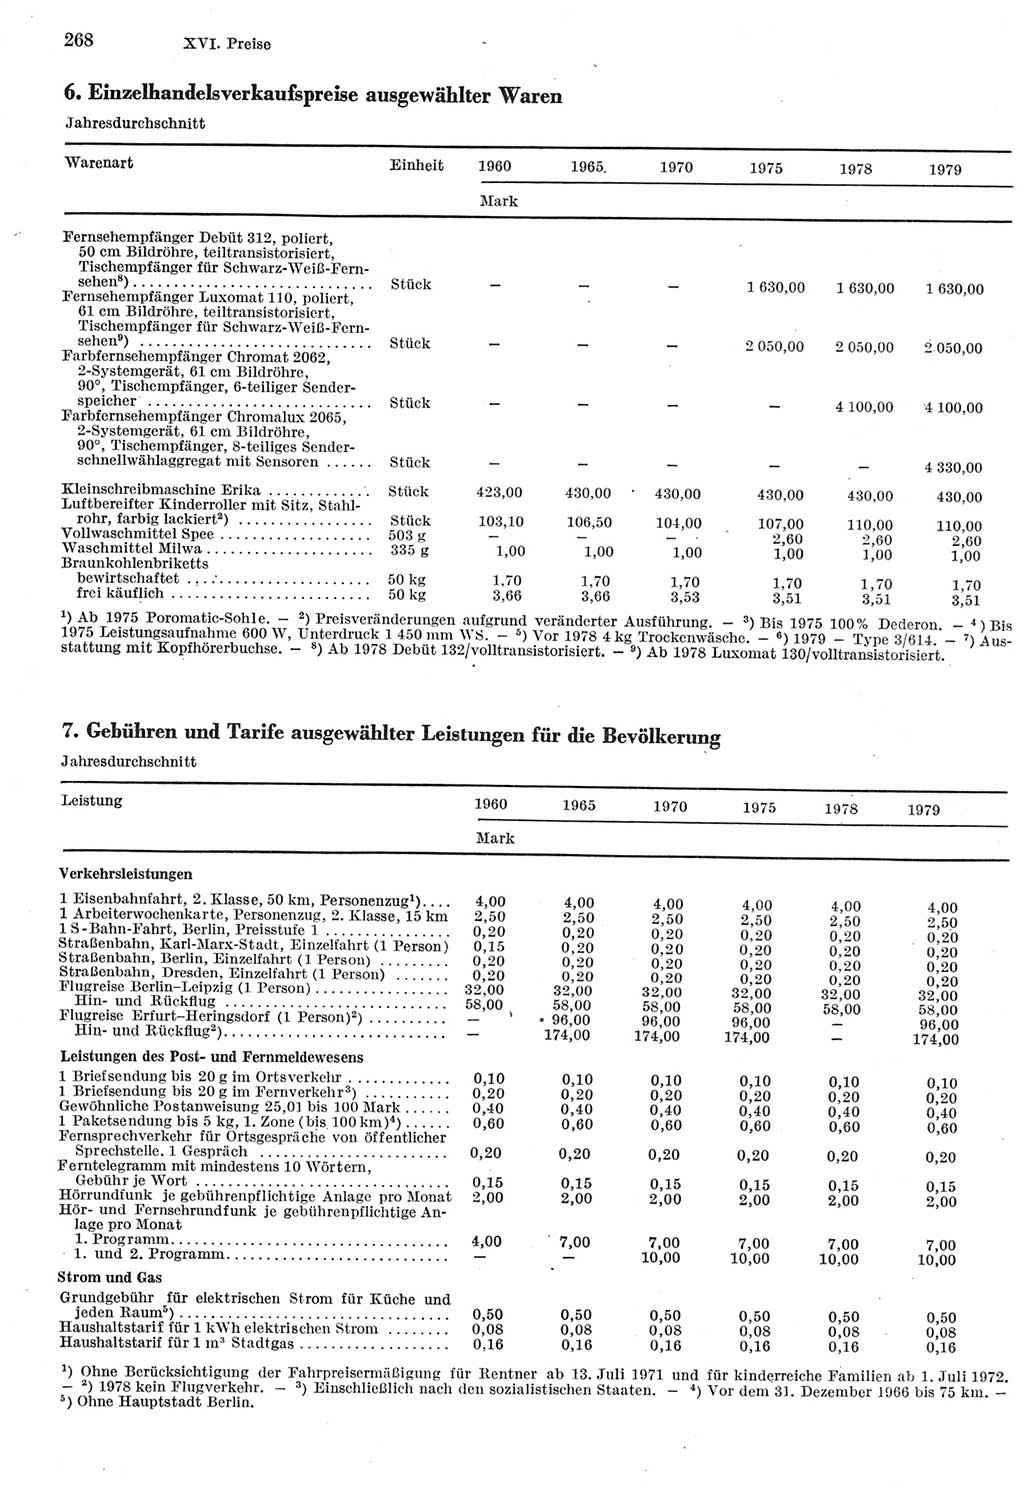 Statistisches Jahrbuch der Deutschen Demokratischen Republik (DDR) 1980, Seite 268 (Stat. Jb. DDR 1980, S. 268)